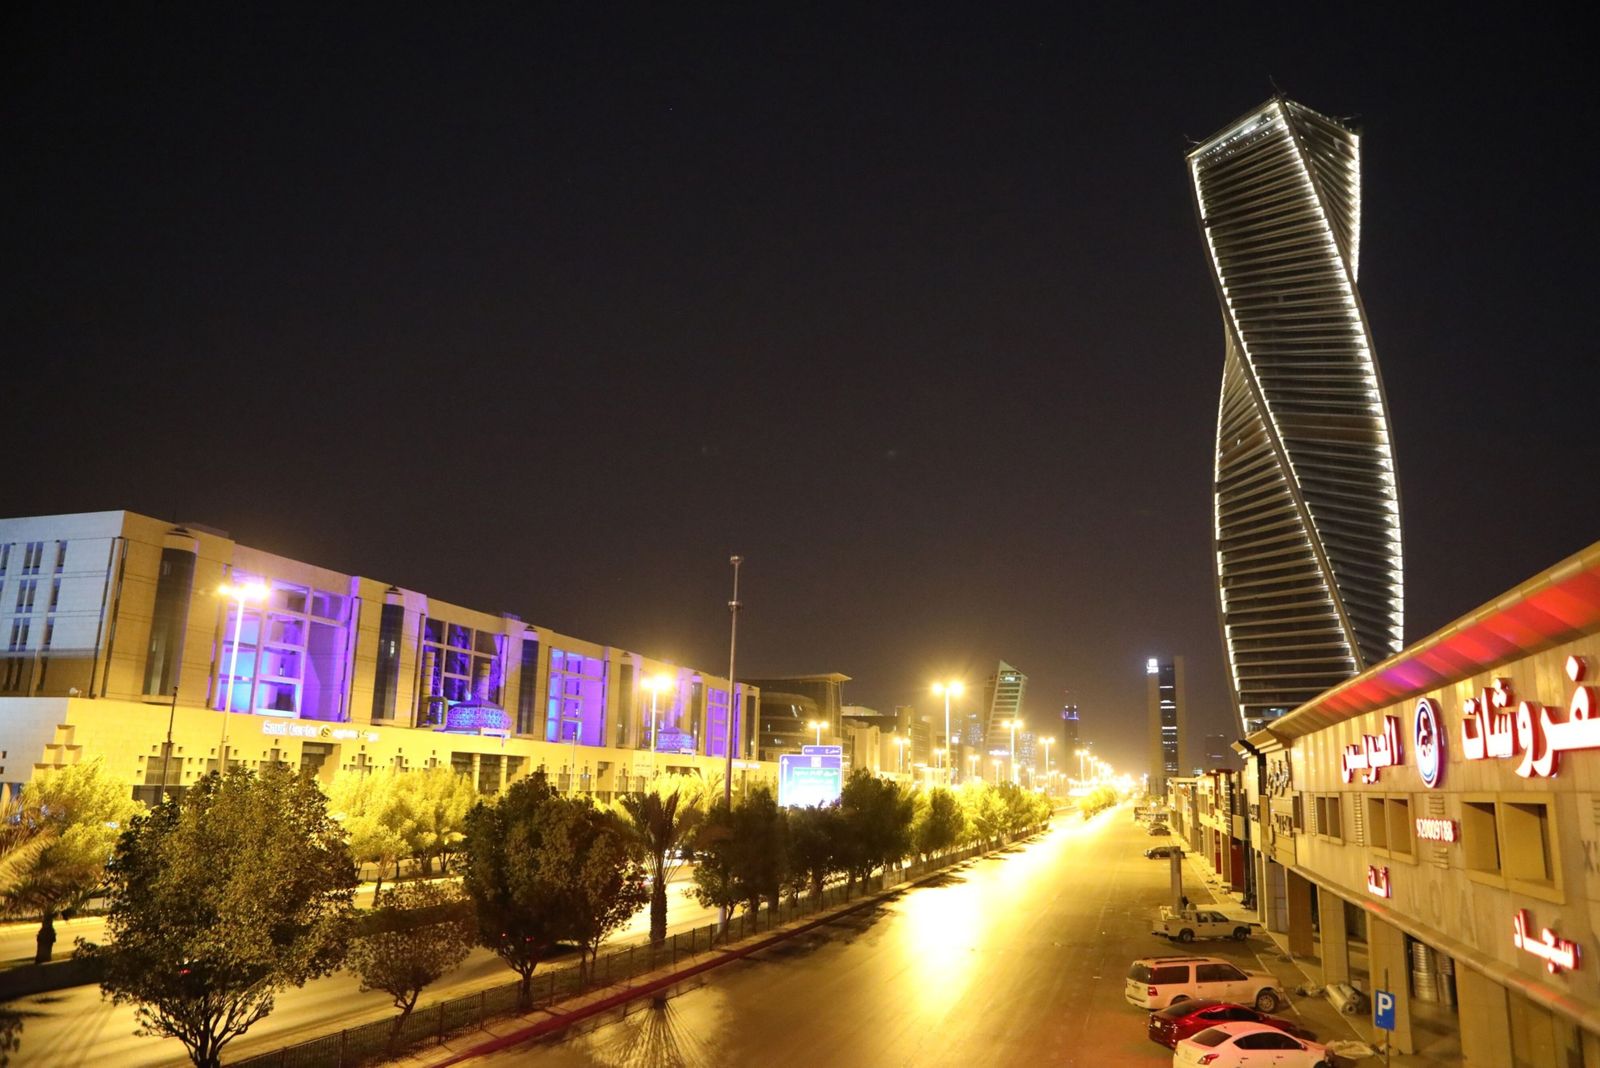 رئيس أكوا باور: السعودية تحتاج مئات المليارات للاستثمار في الكهرباء بحلول 2030